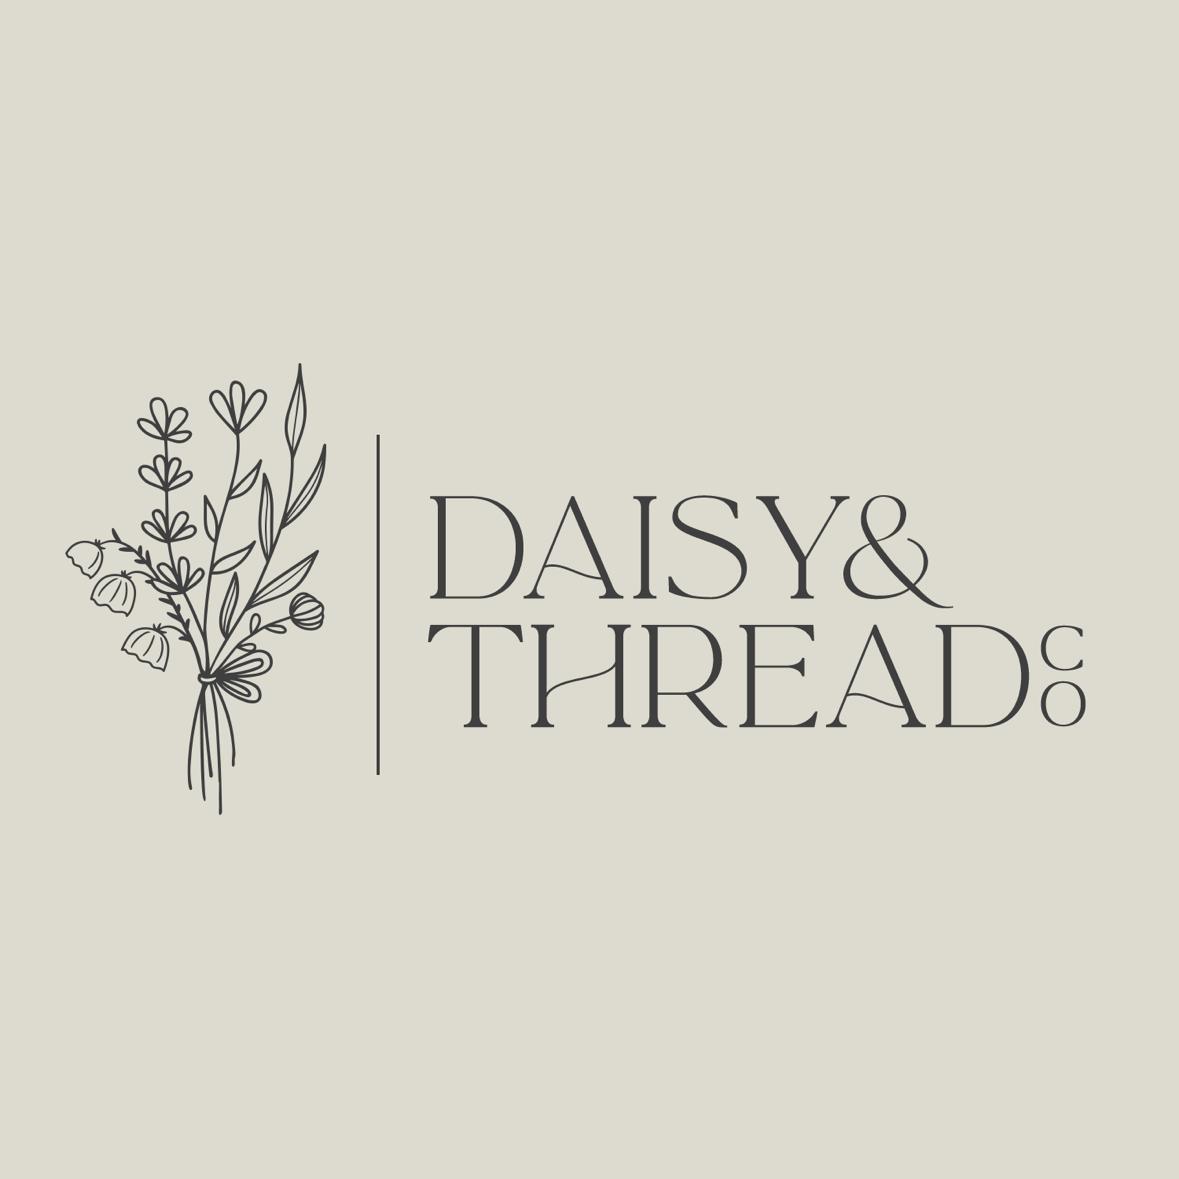 Daisy&Thread Co's images